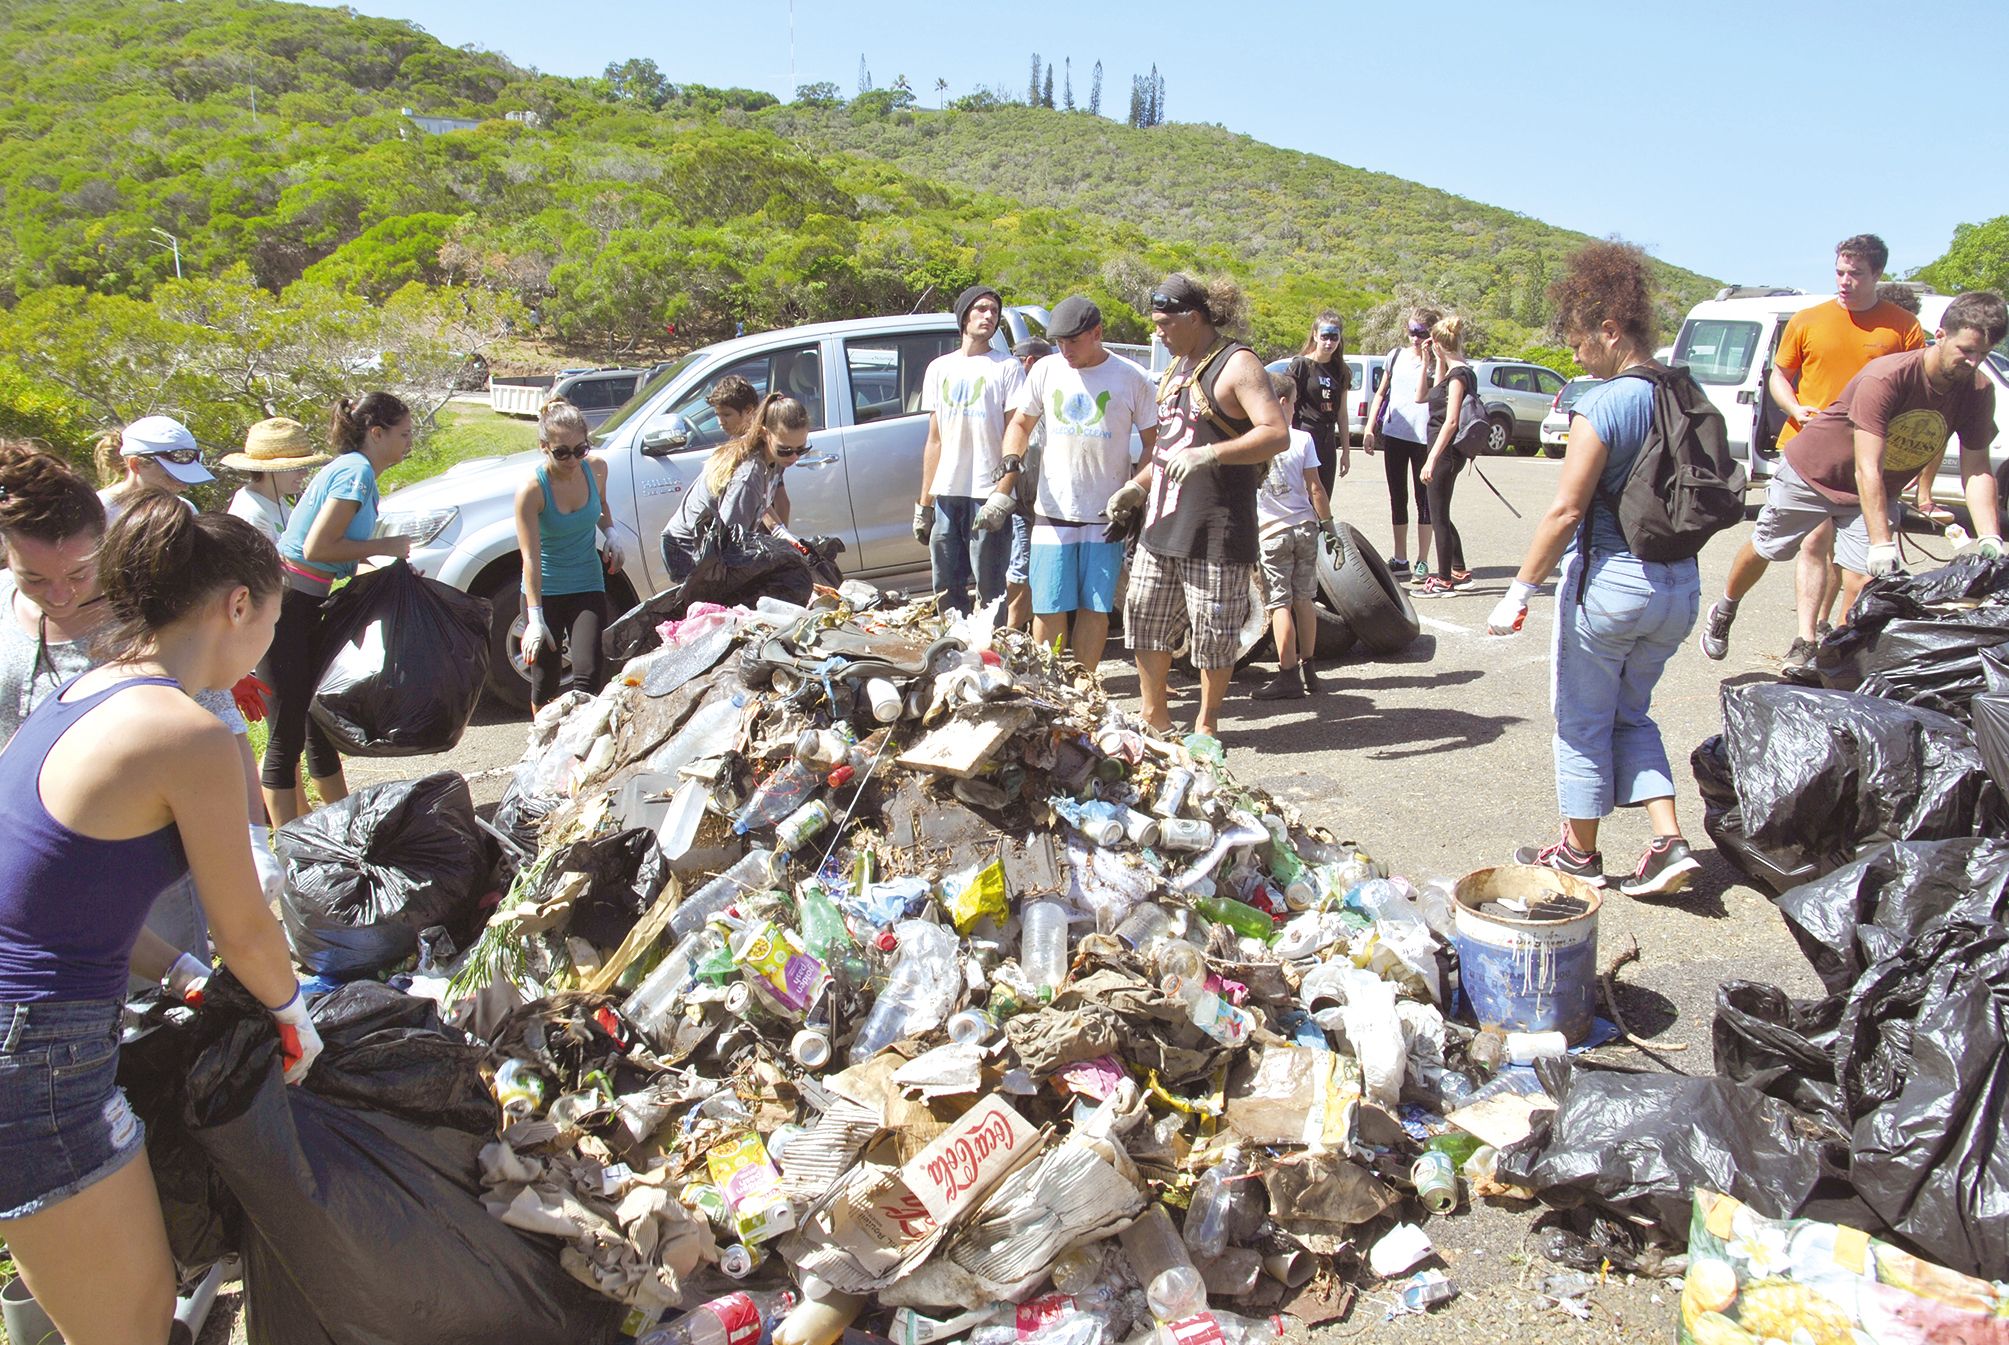 En deux heures de ramassage, près de 500 kg de déchets ont été collectés aux abords du premier parking, avant d’être triés par les bénévoles de l’association Caledoclean.